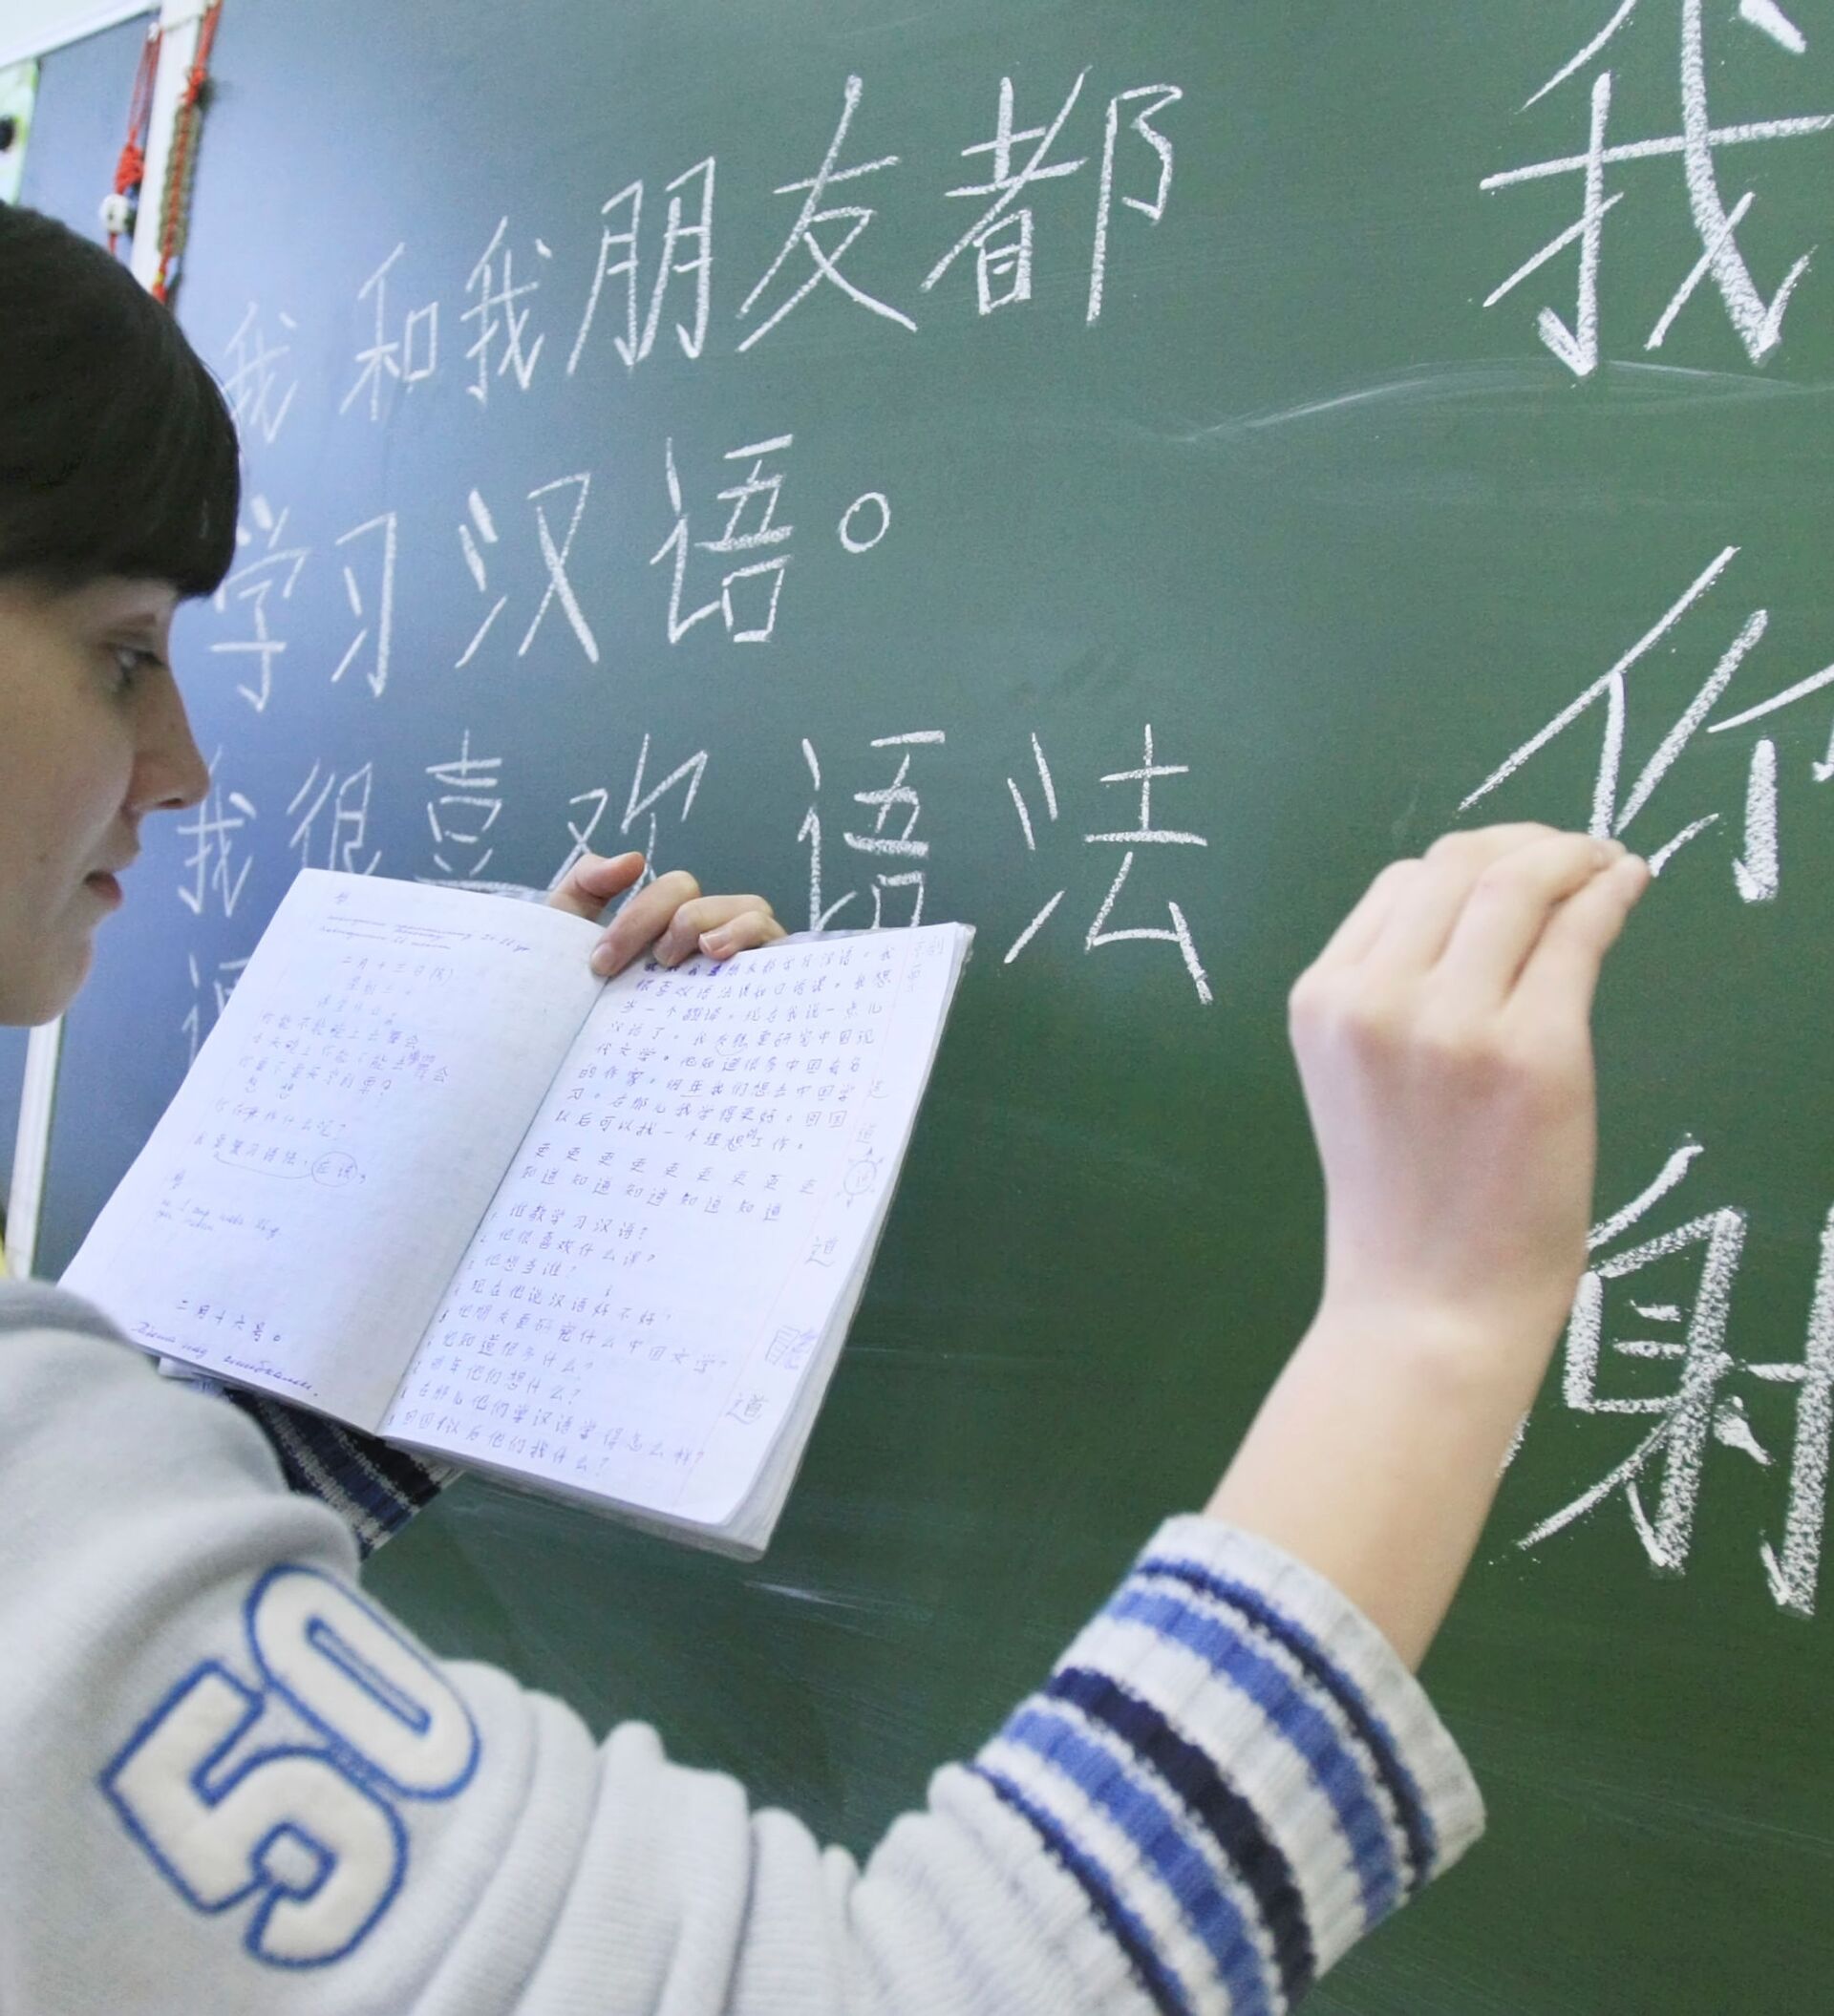 В школе китайский изучает 60 учащихся. Школа китайского языка. Учим китайский. Урок китайского языка в школе. Школьники изучают китайский язык.